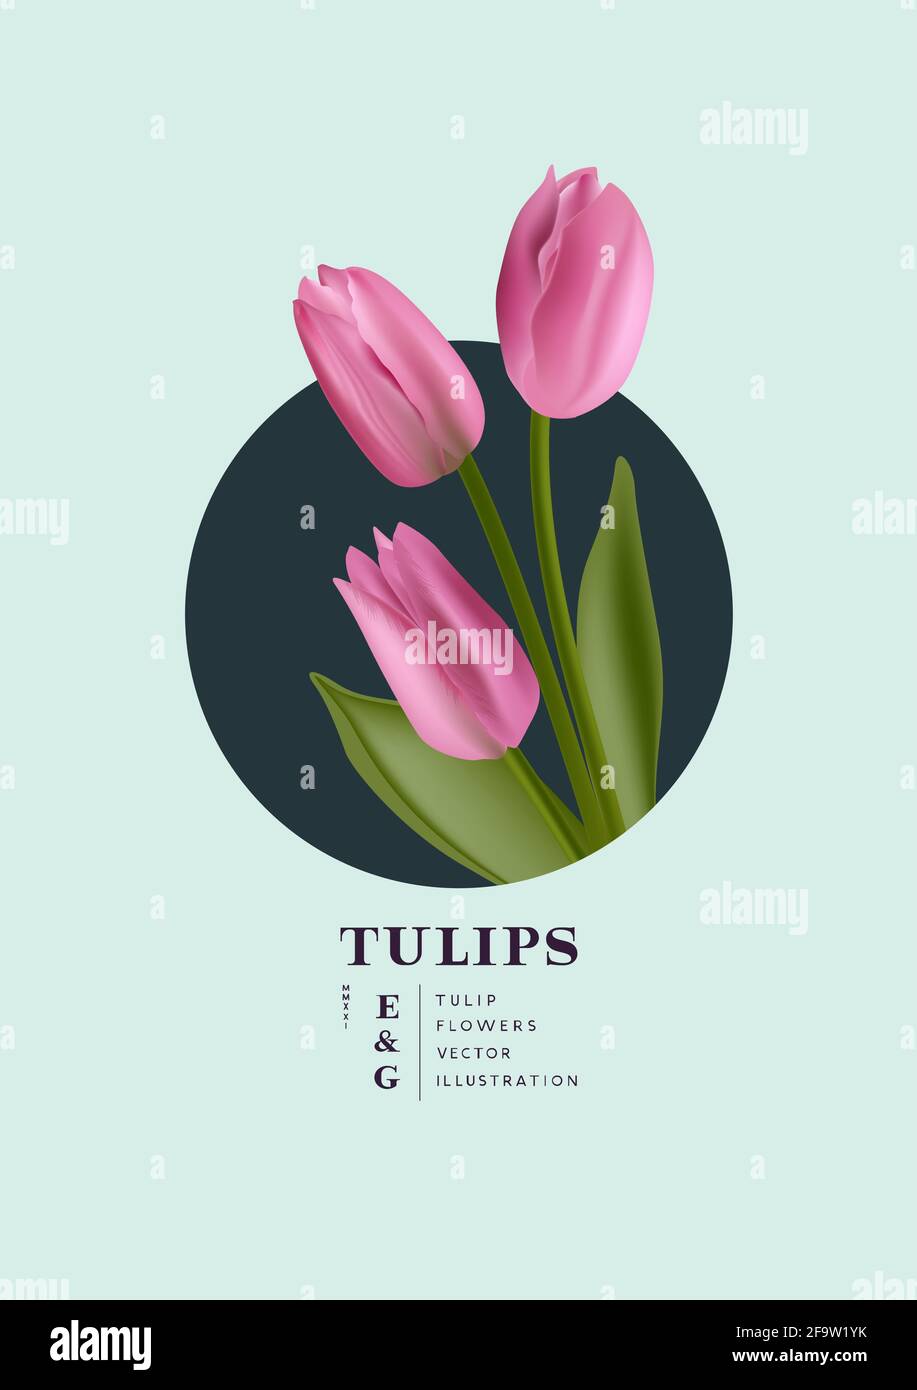 Fiori tulipani floreali realistico modello di scheda di posizionamento fiori. Illustrazione vettoriale del layout contemporaneo. Illustrazione Vettoriale